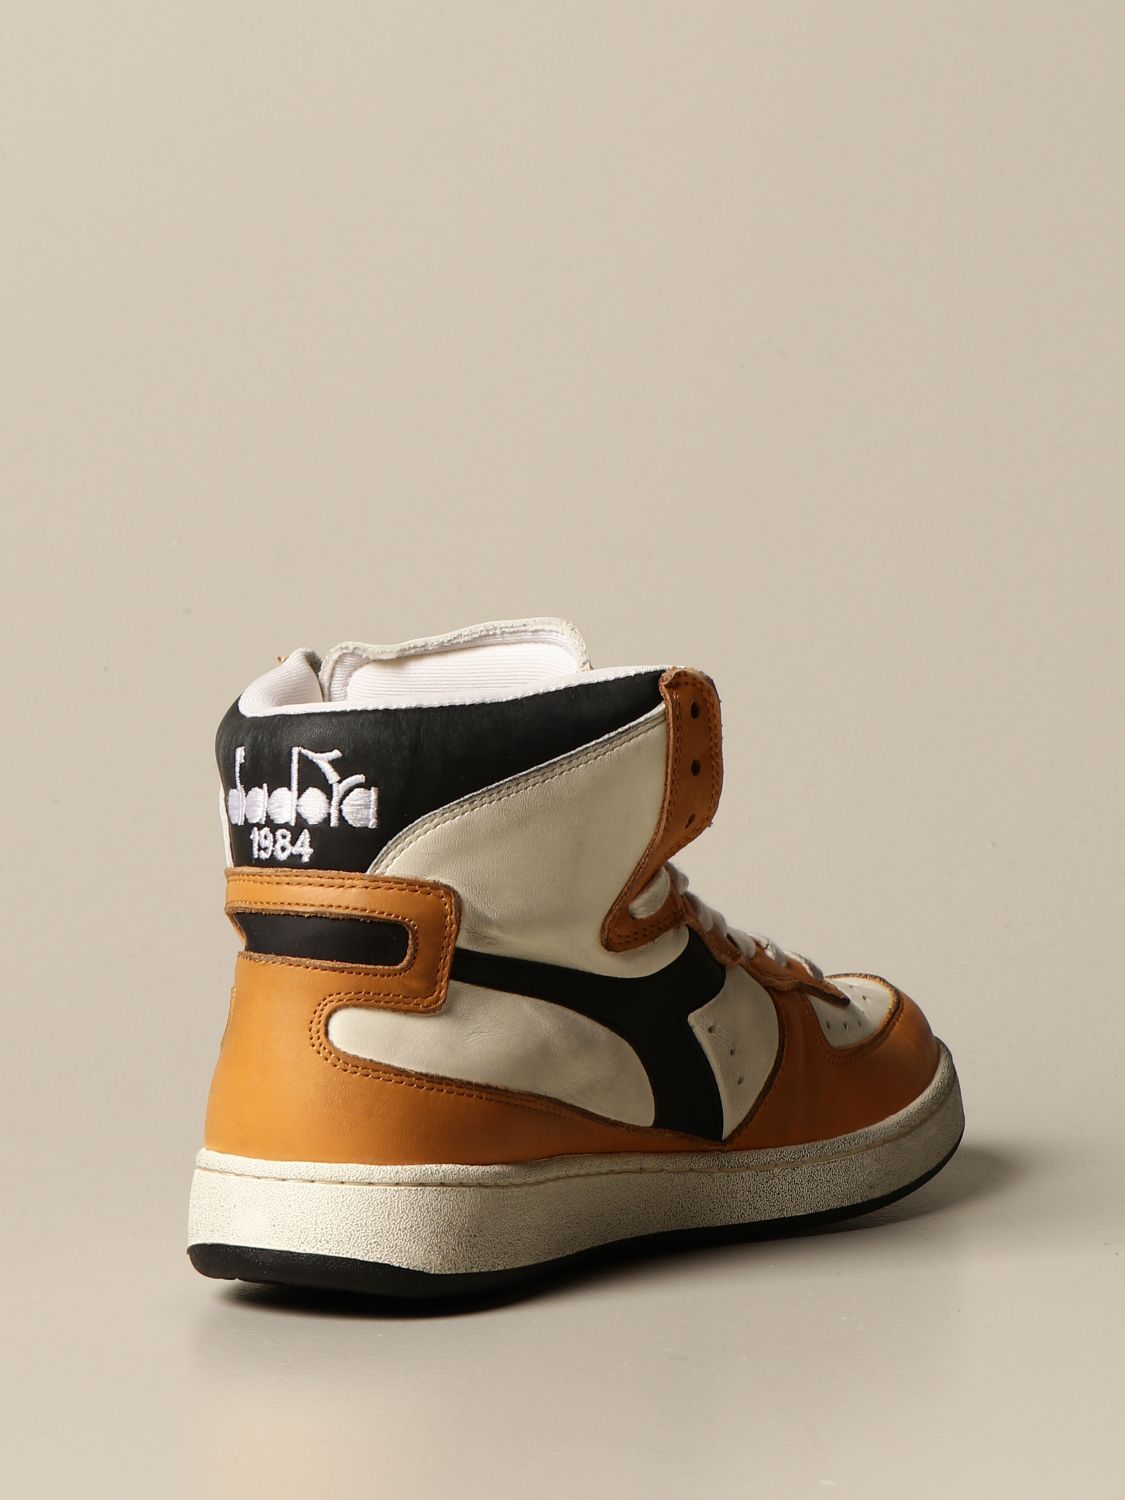 diadora 1984 shoes